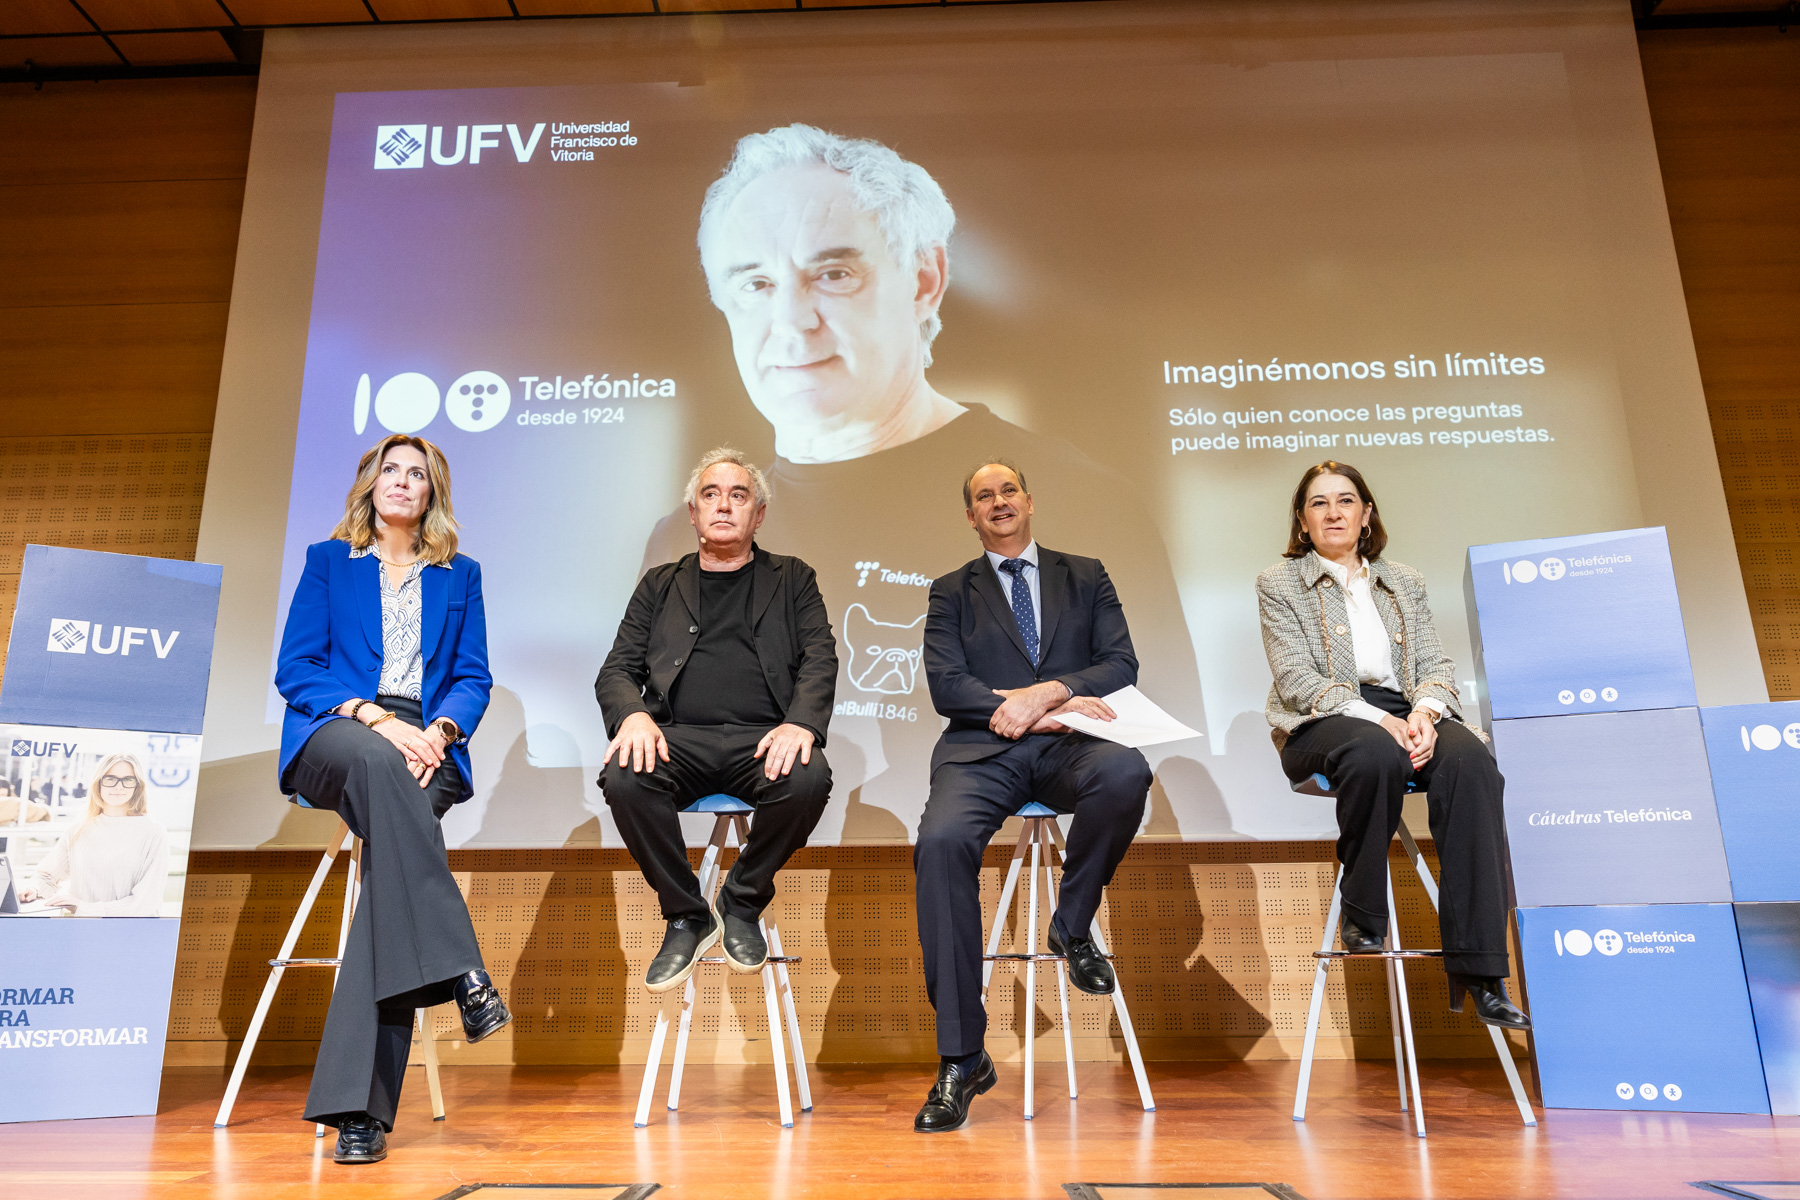 La alcaldesa participa en una jornada sobre innovación en la Universidad Francisco de Vitoria